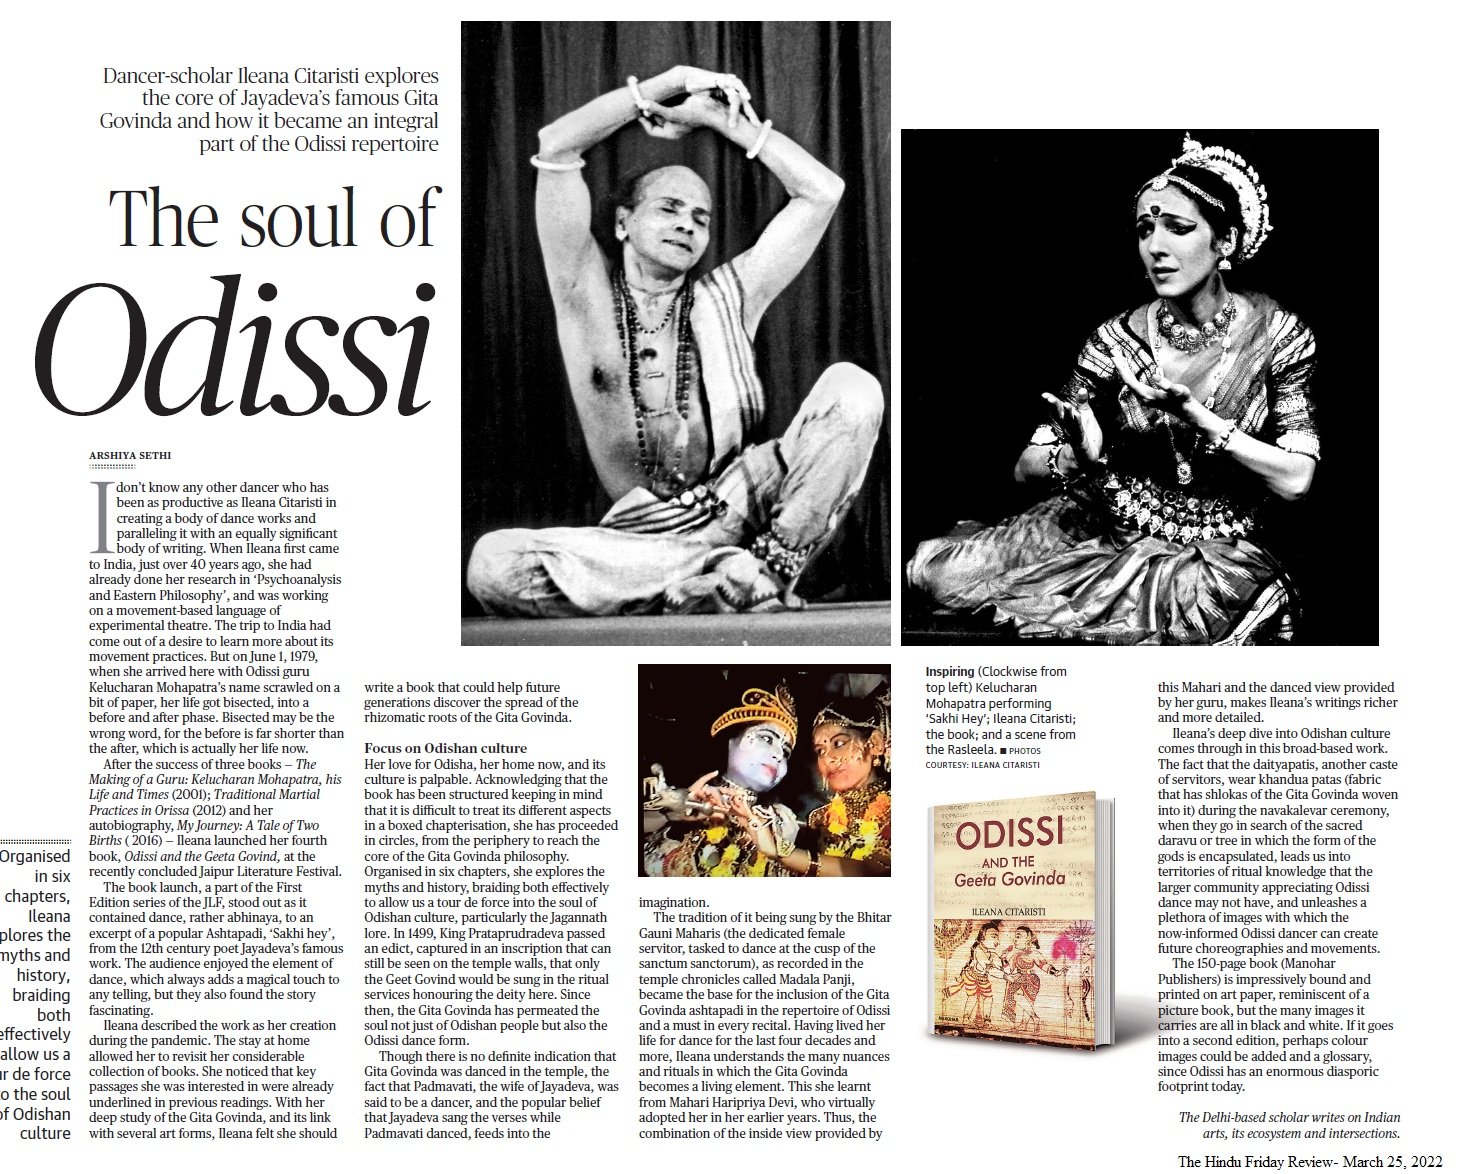 The soul of Odissi - Arshiya Sethi